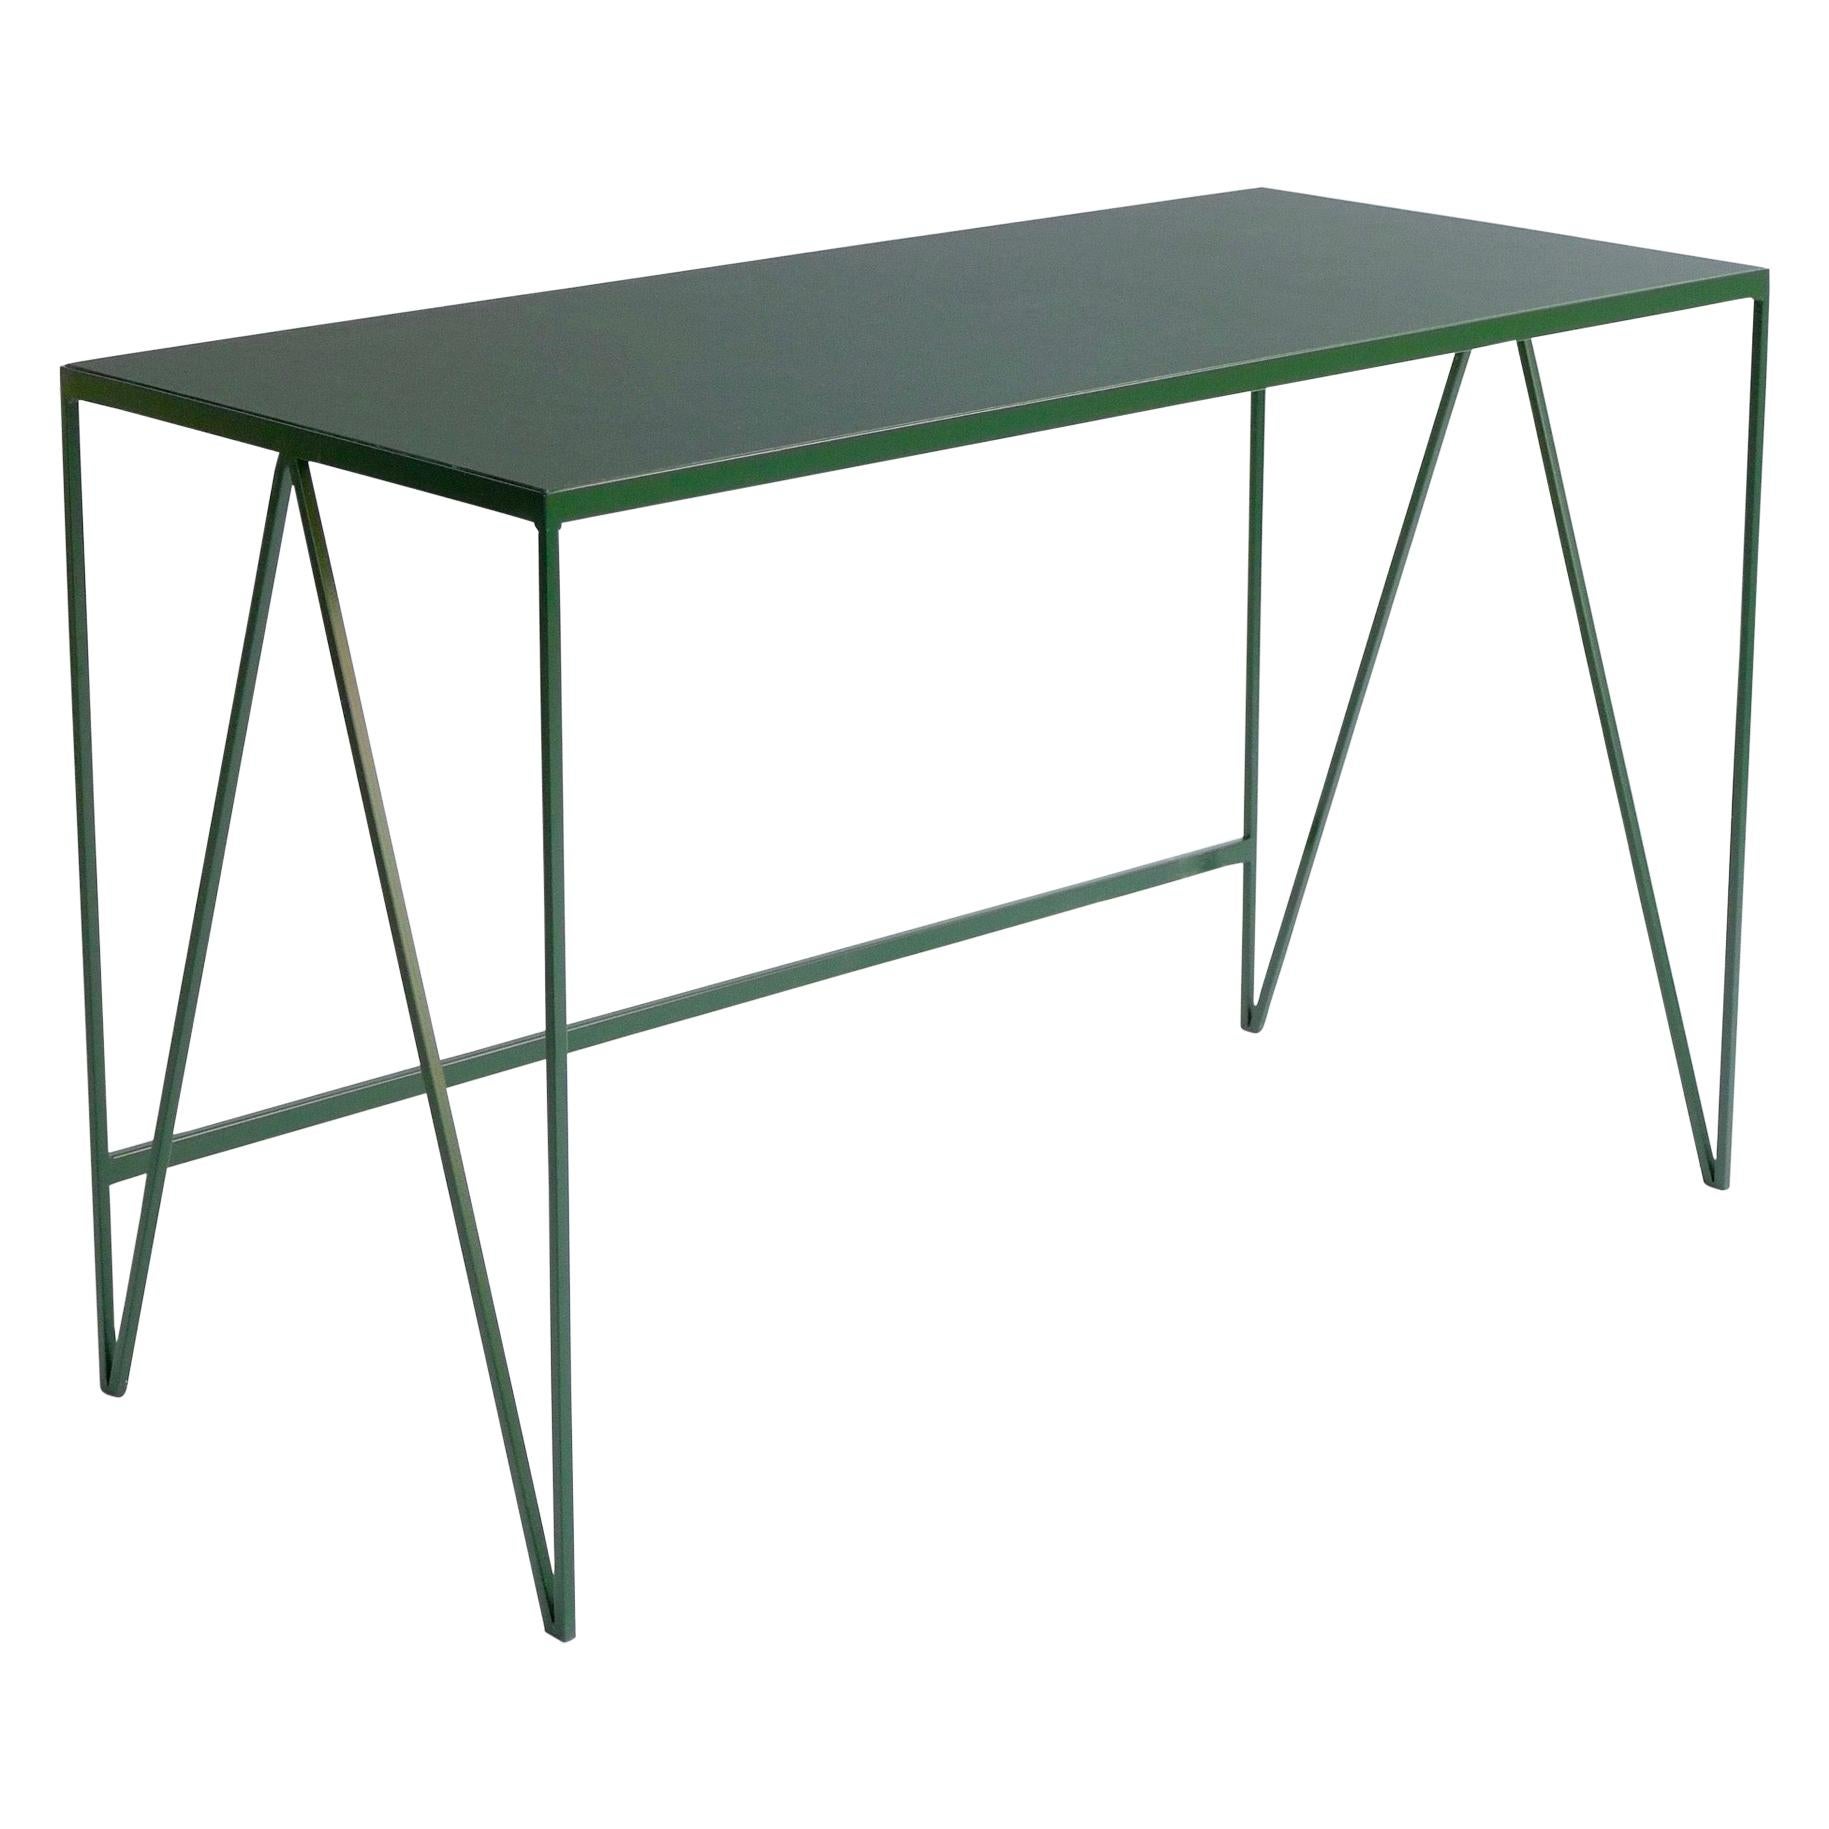 Bureau d'étude vert profond avec plateau de table en linoléum naturel, personnalisable en vente